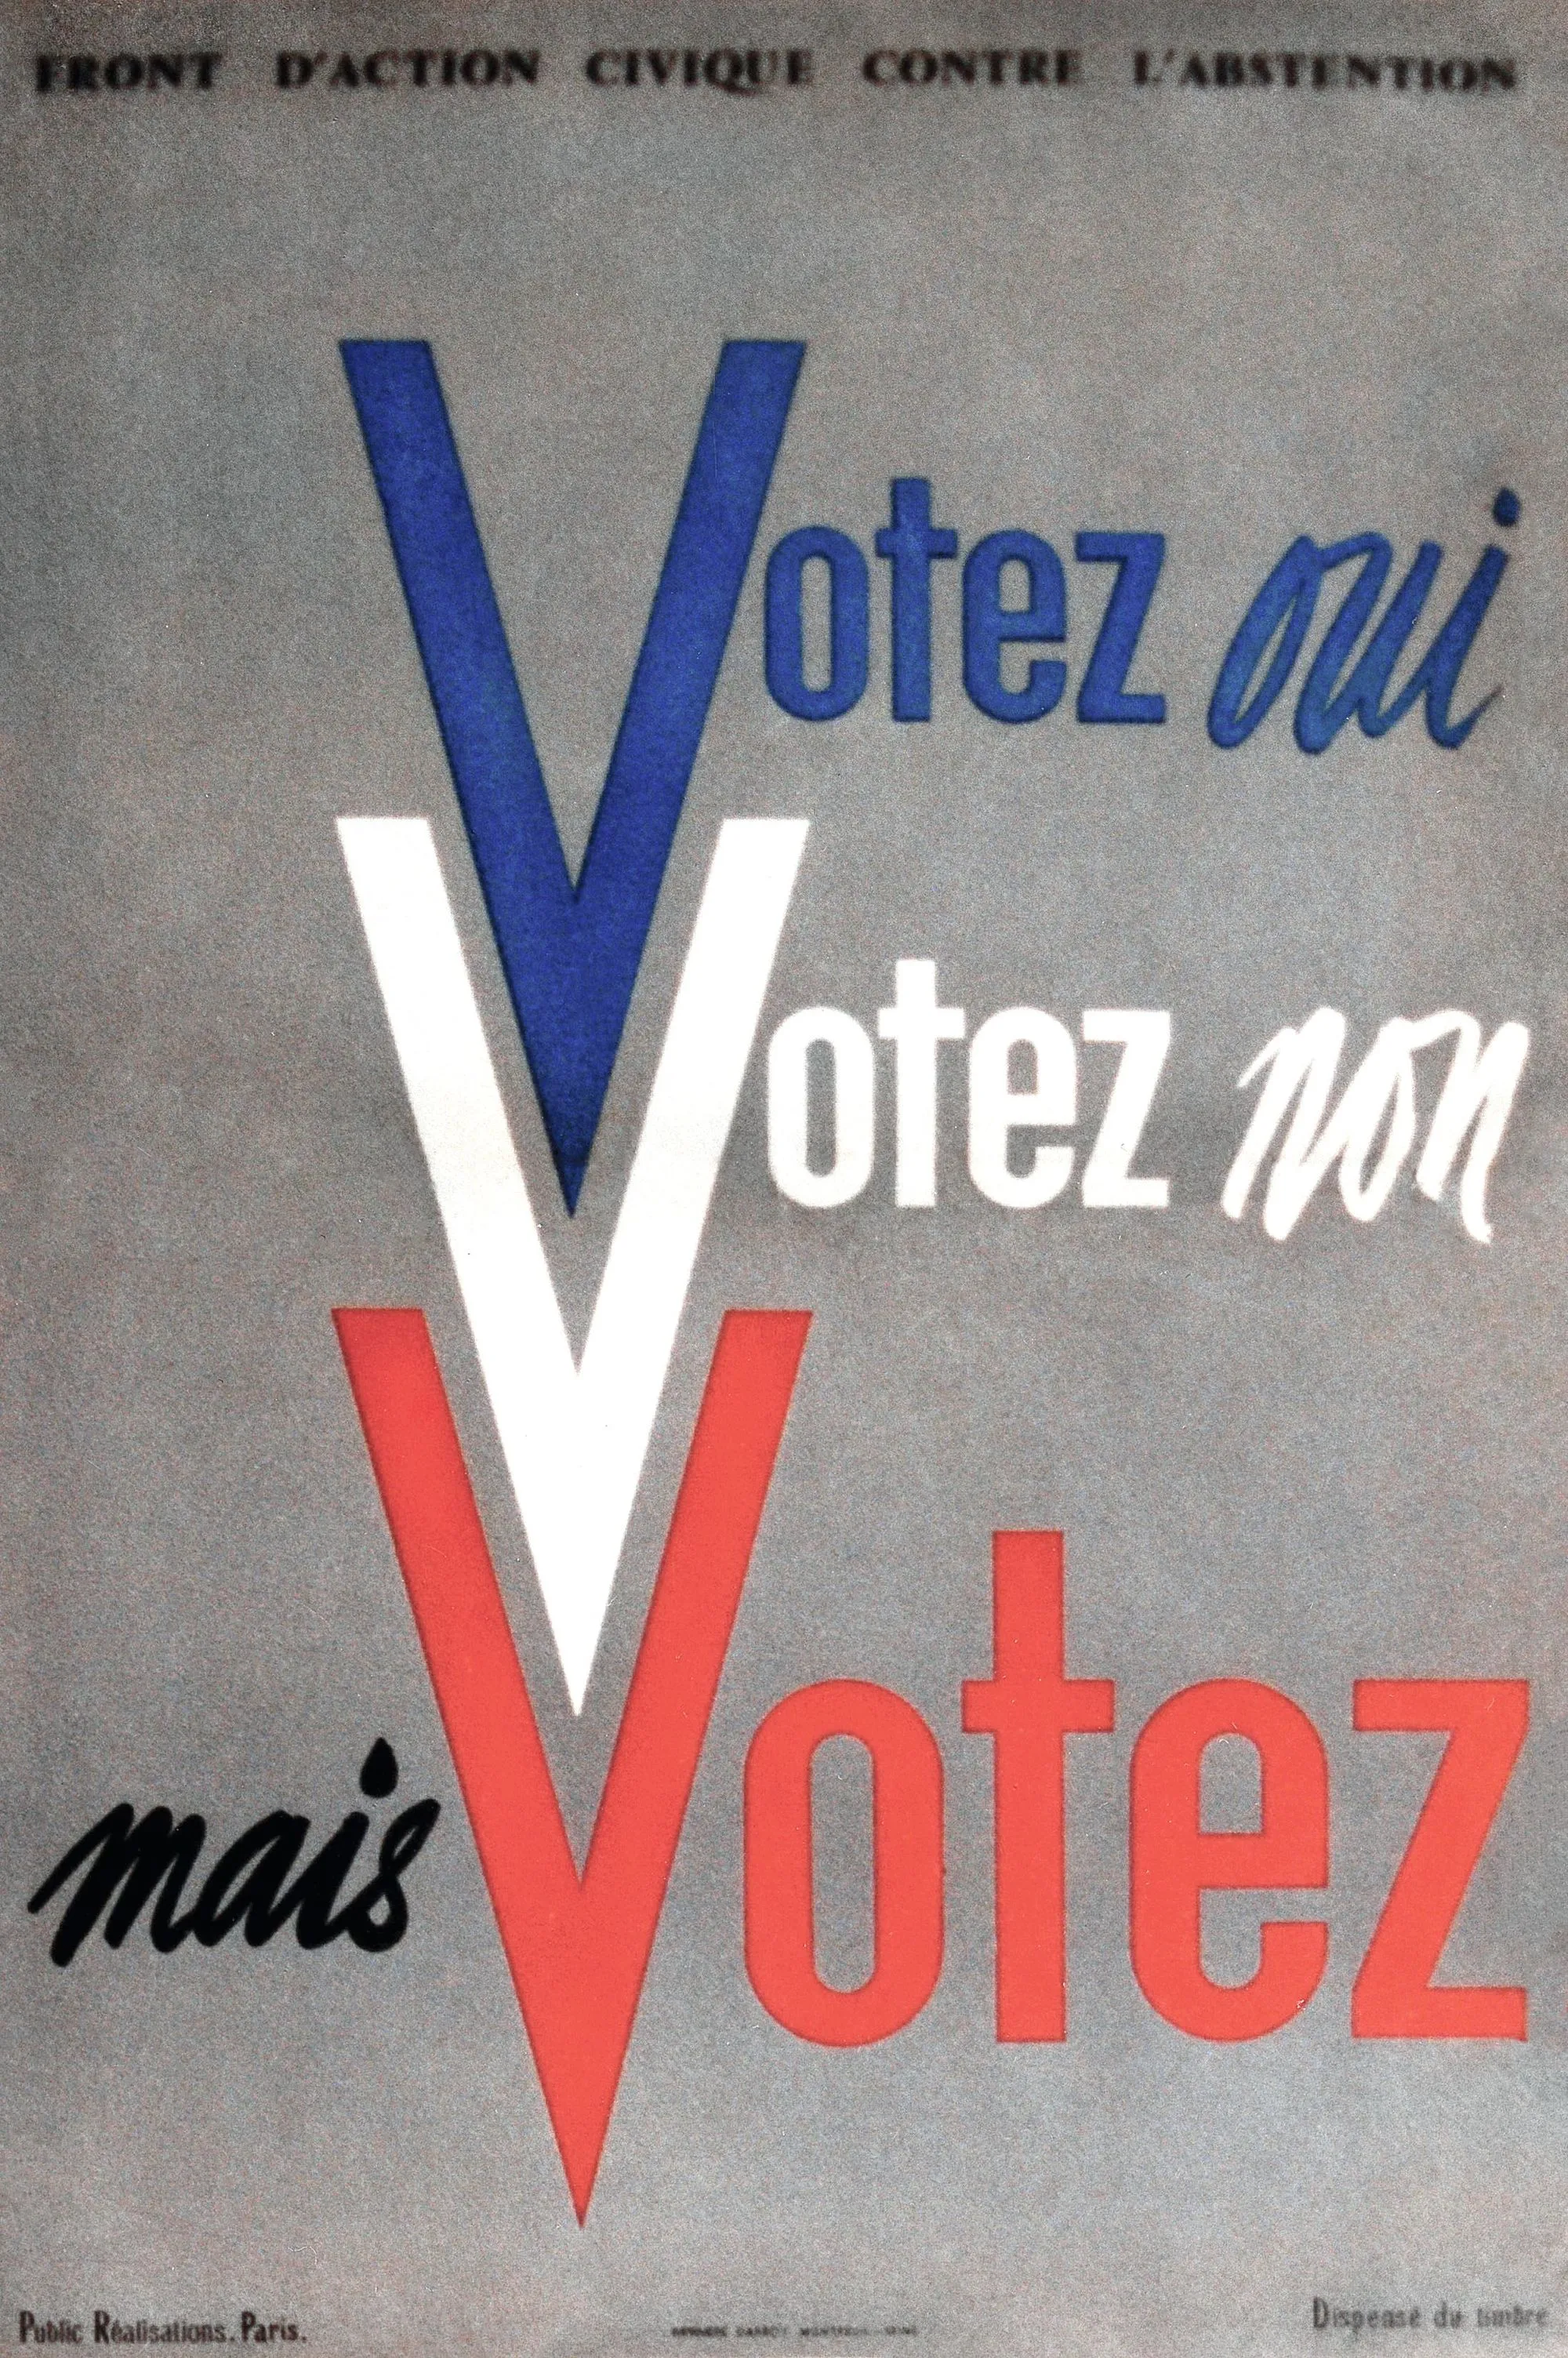 Affiche du Front d'action civique contre l'abstention lors de la campagne sur le référendum pour la Ve République en 1958.